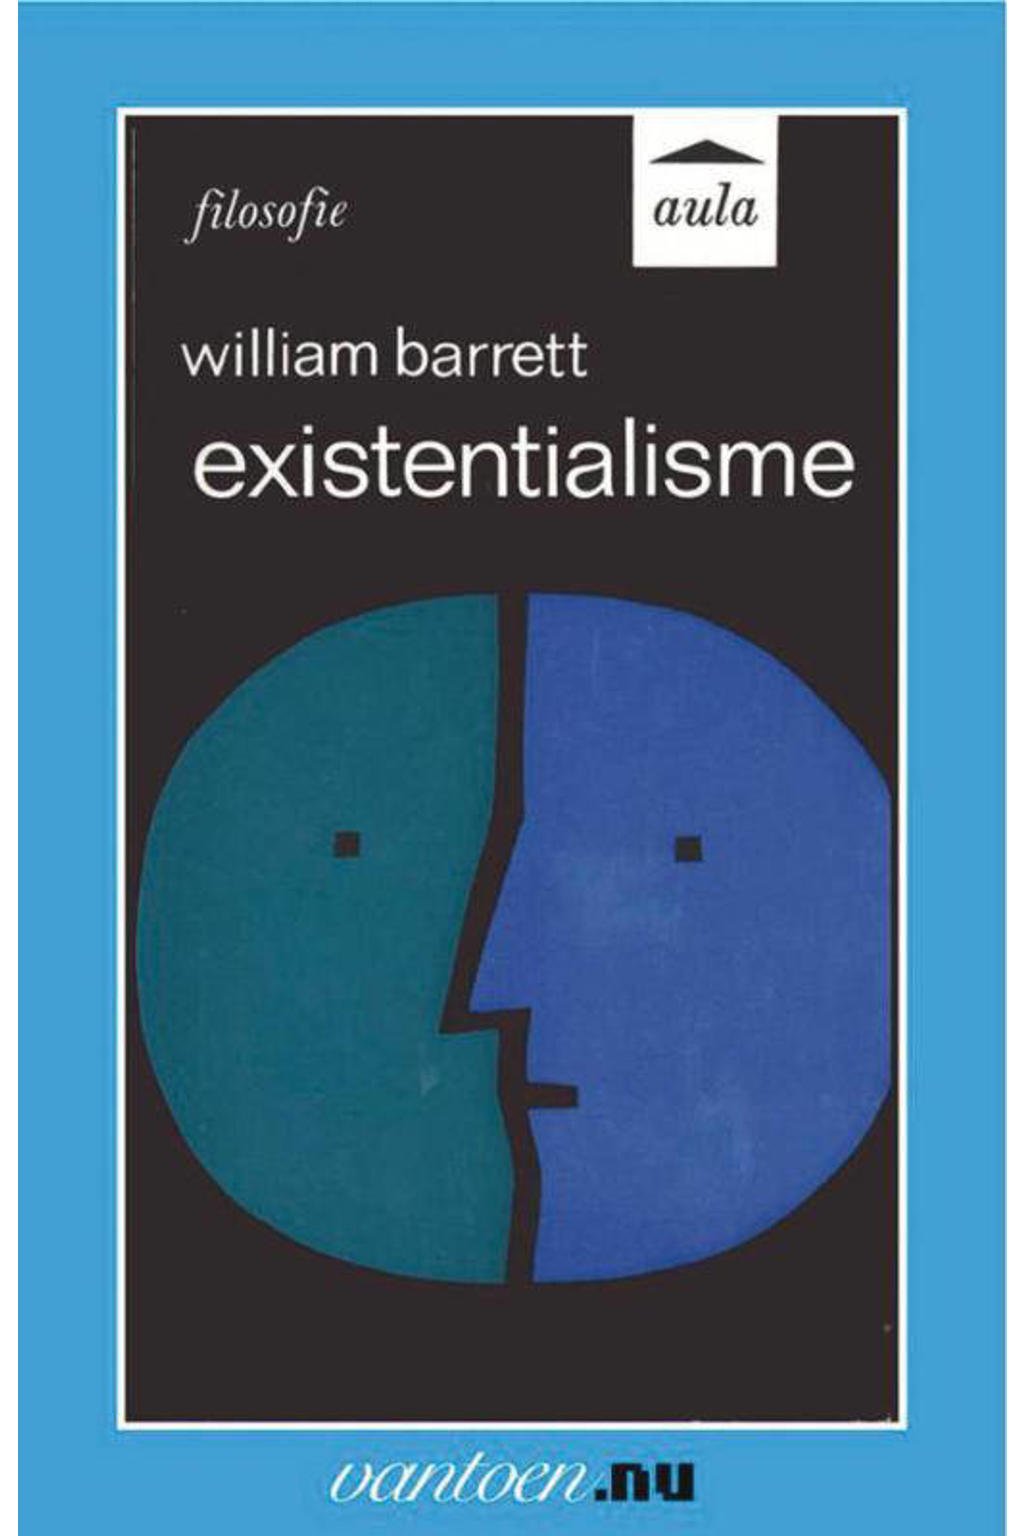 Vantoen.nu: Existentialisme - W. Barrett